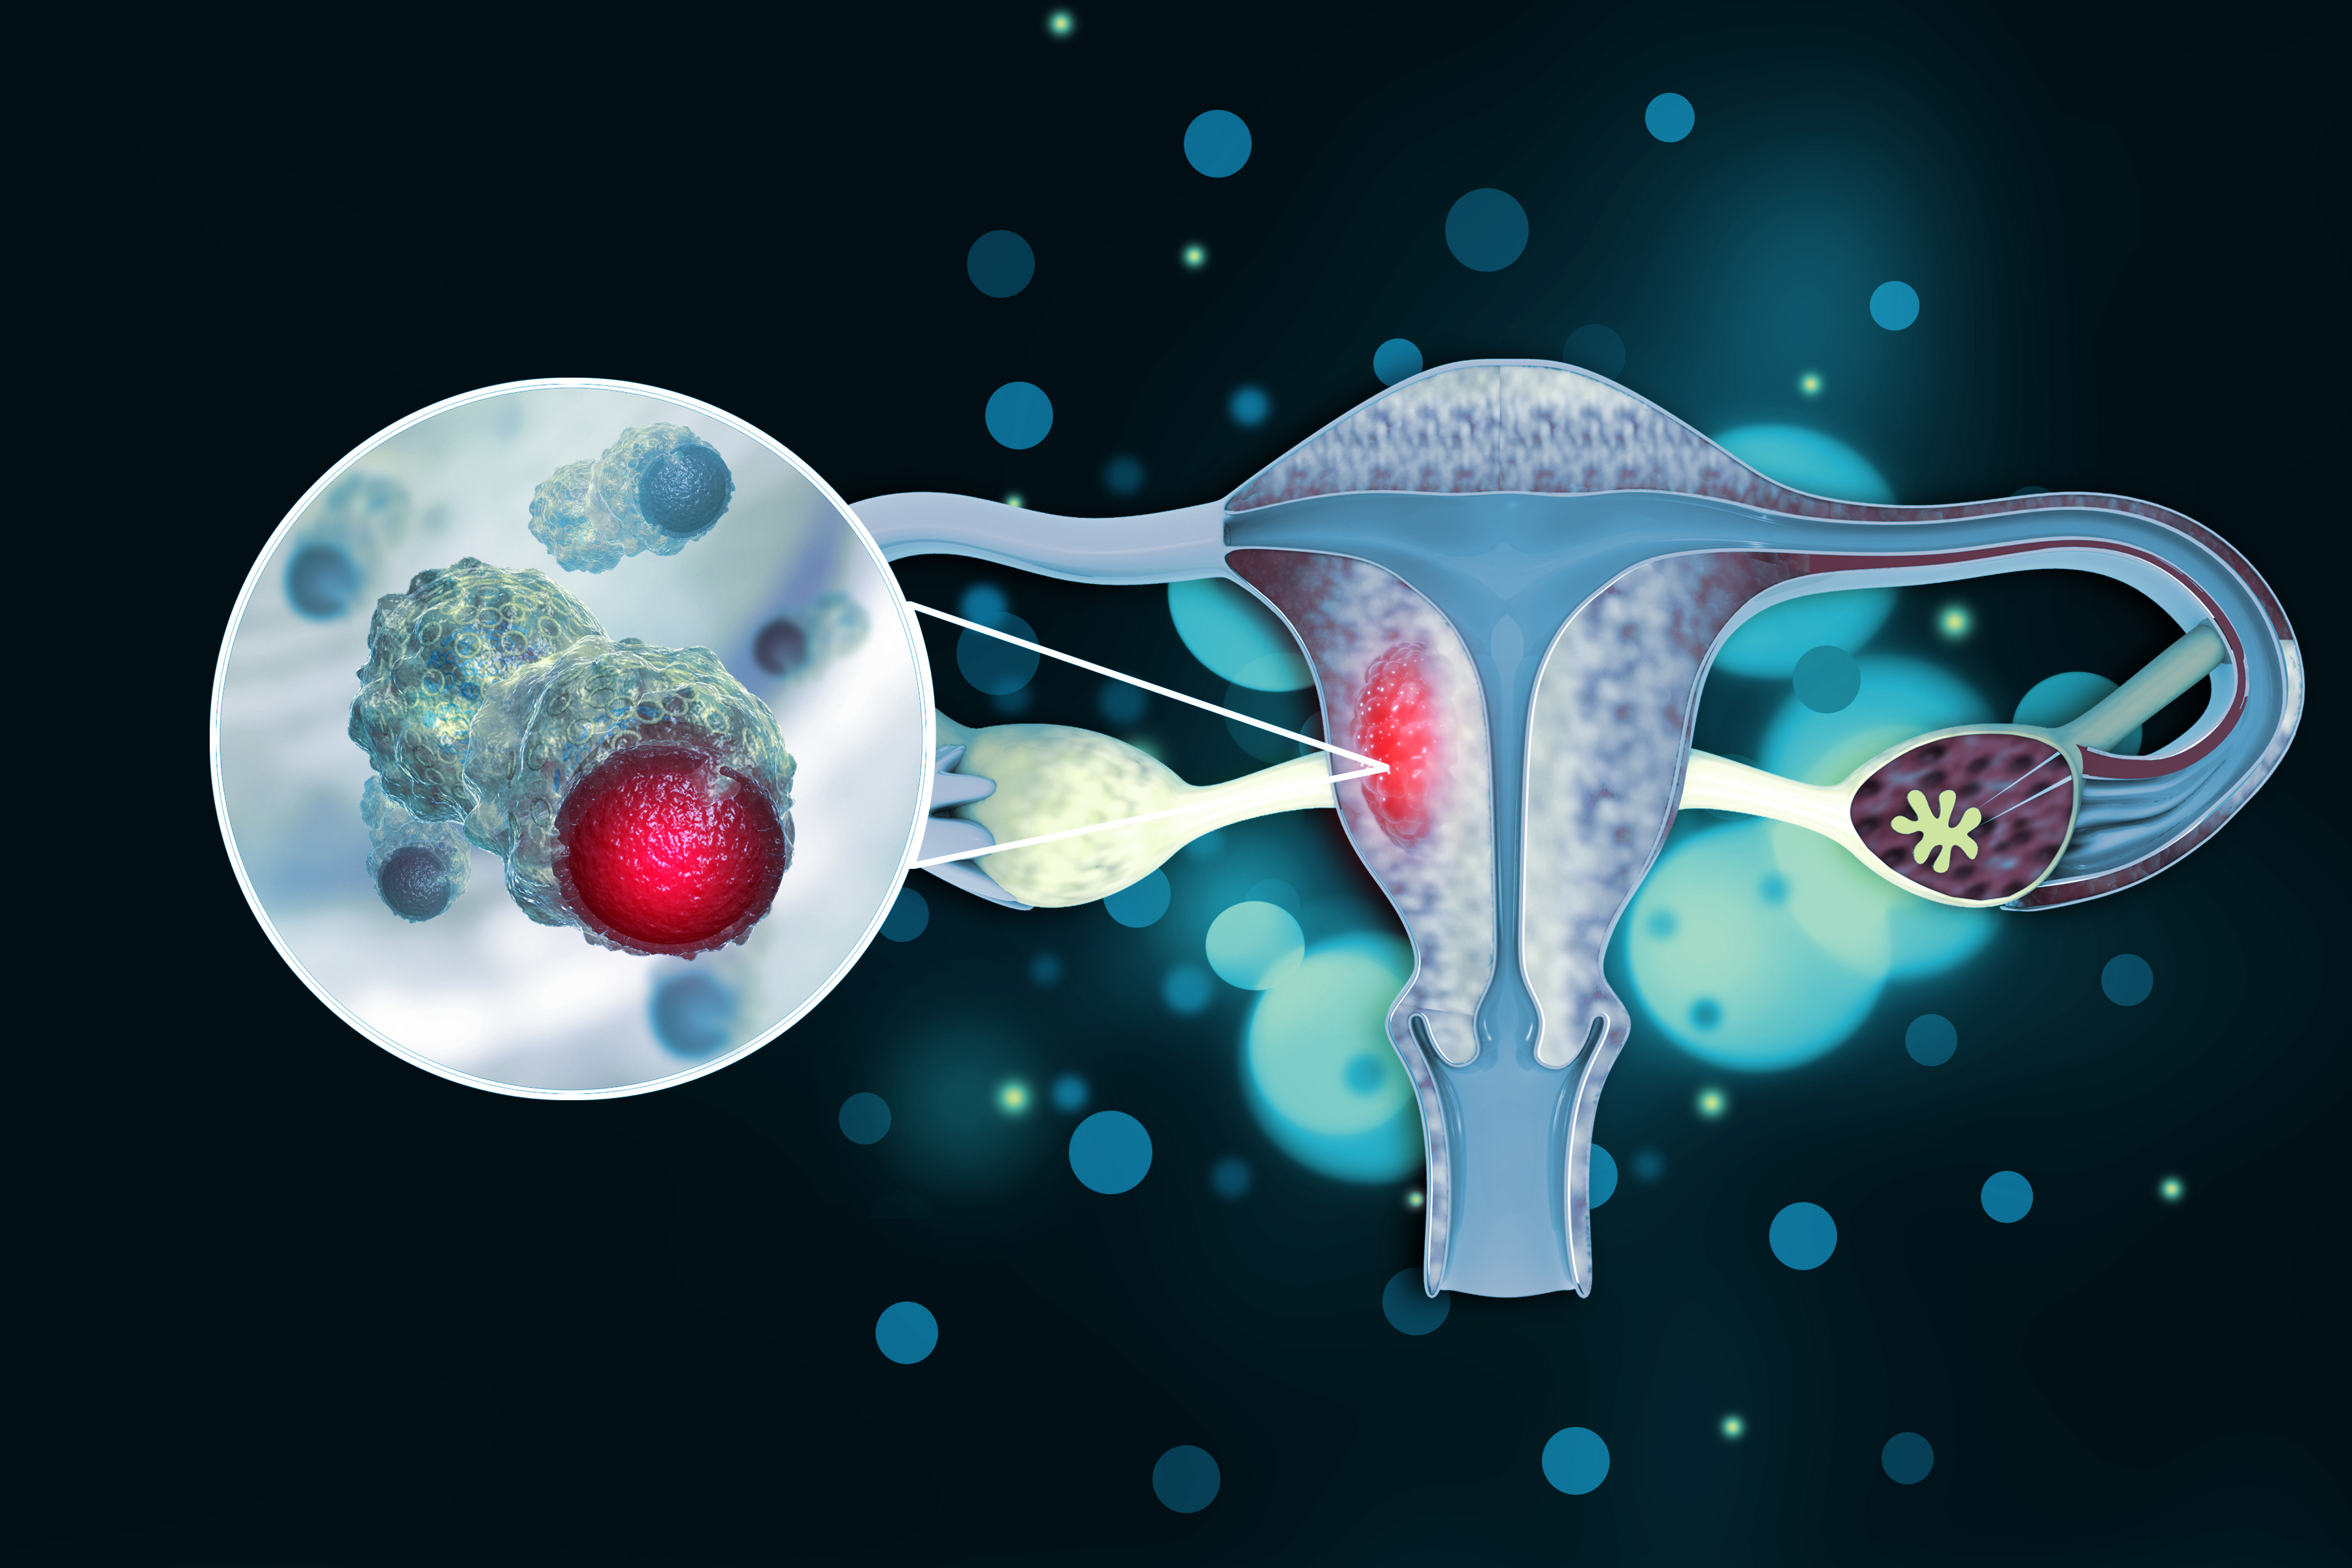 Uterus cancer, endometrial